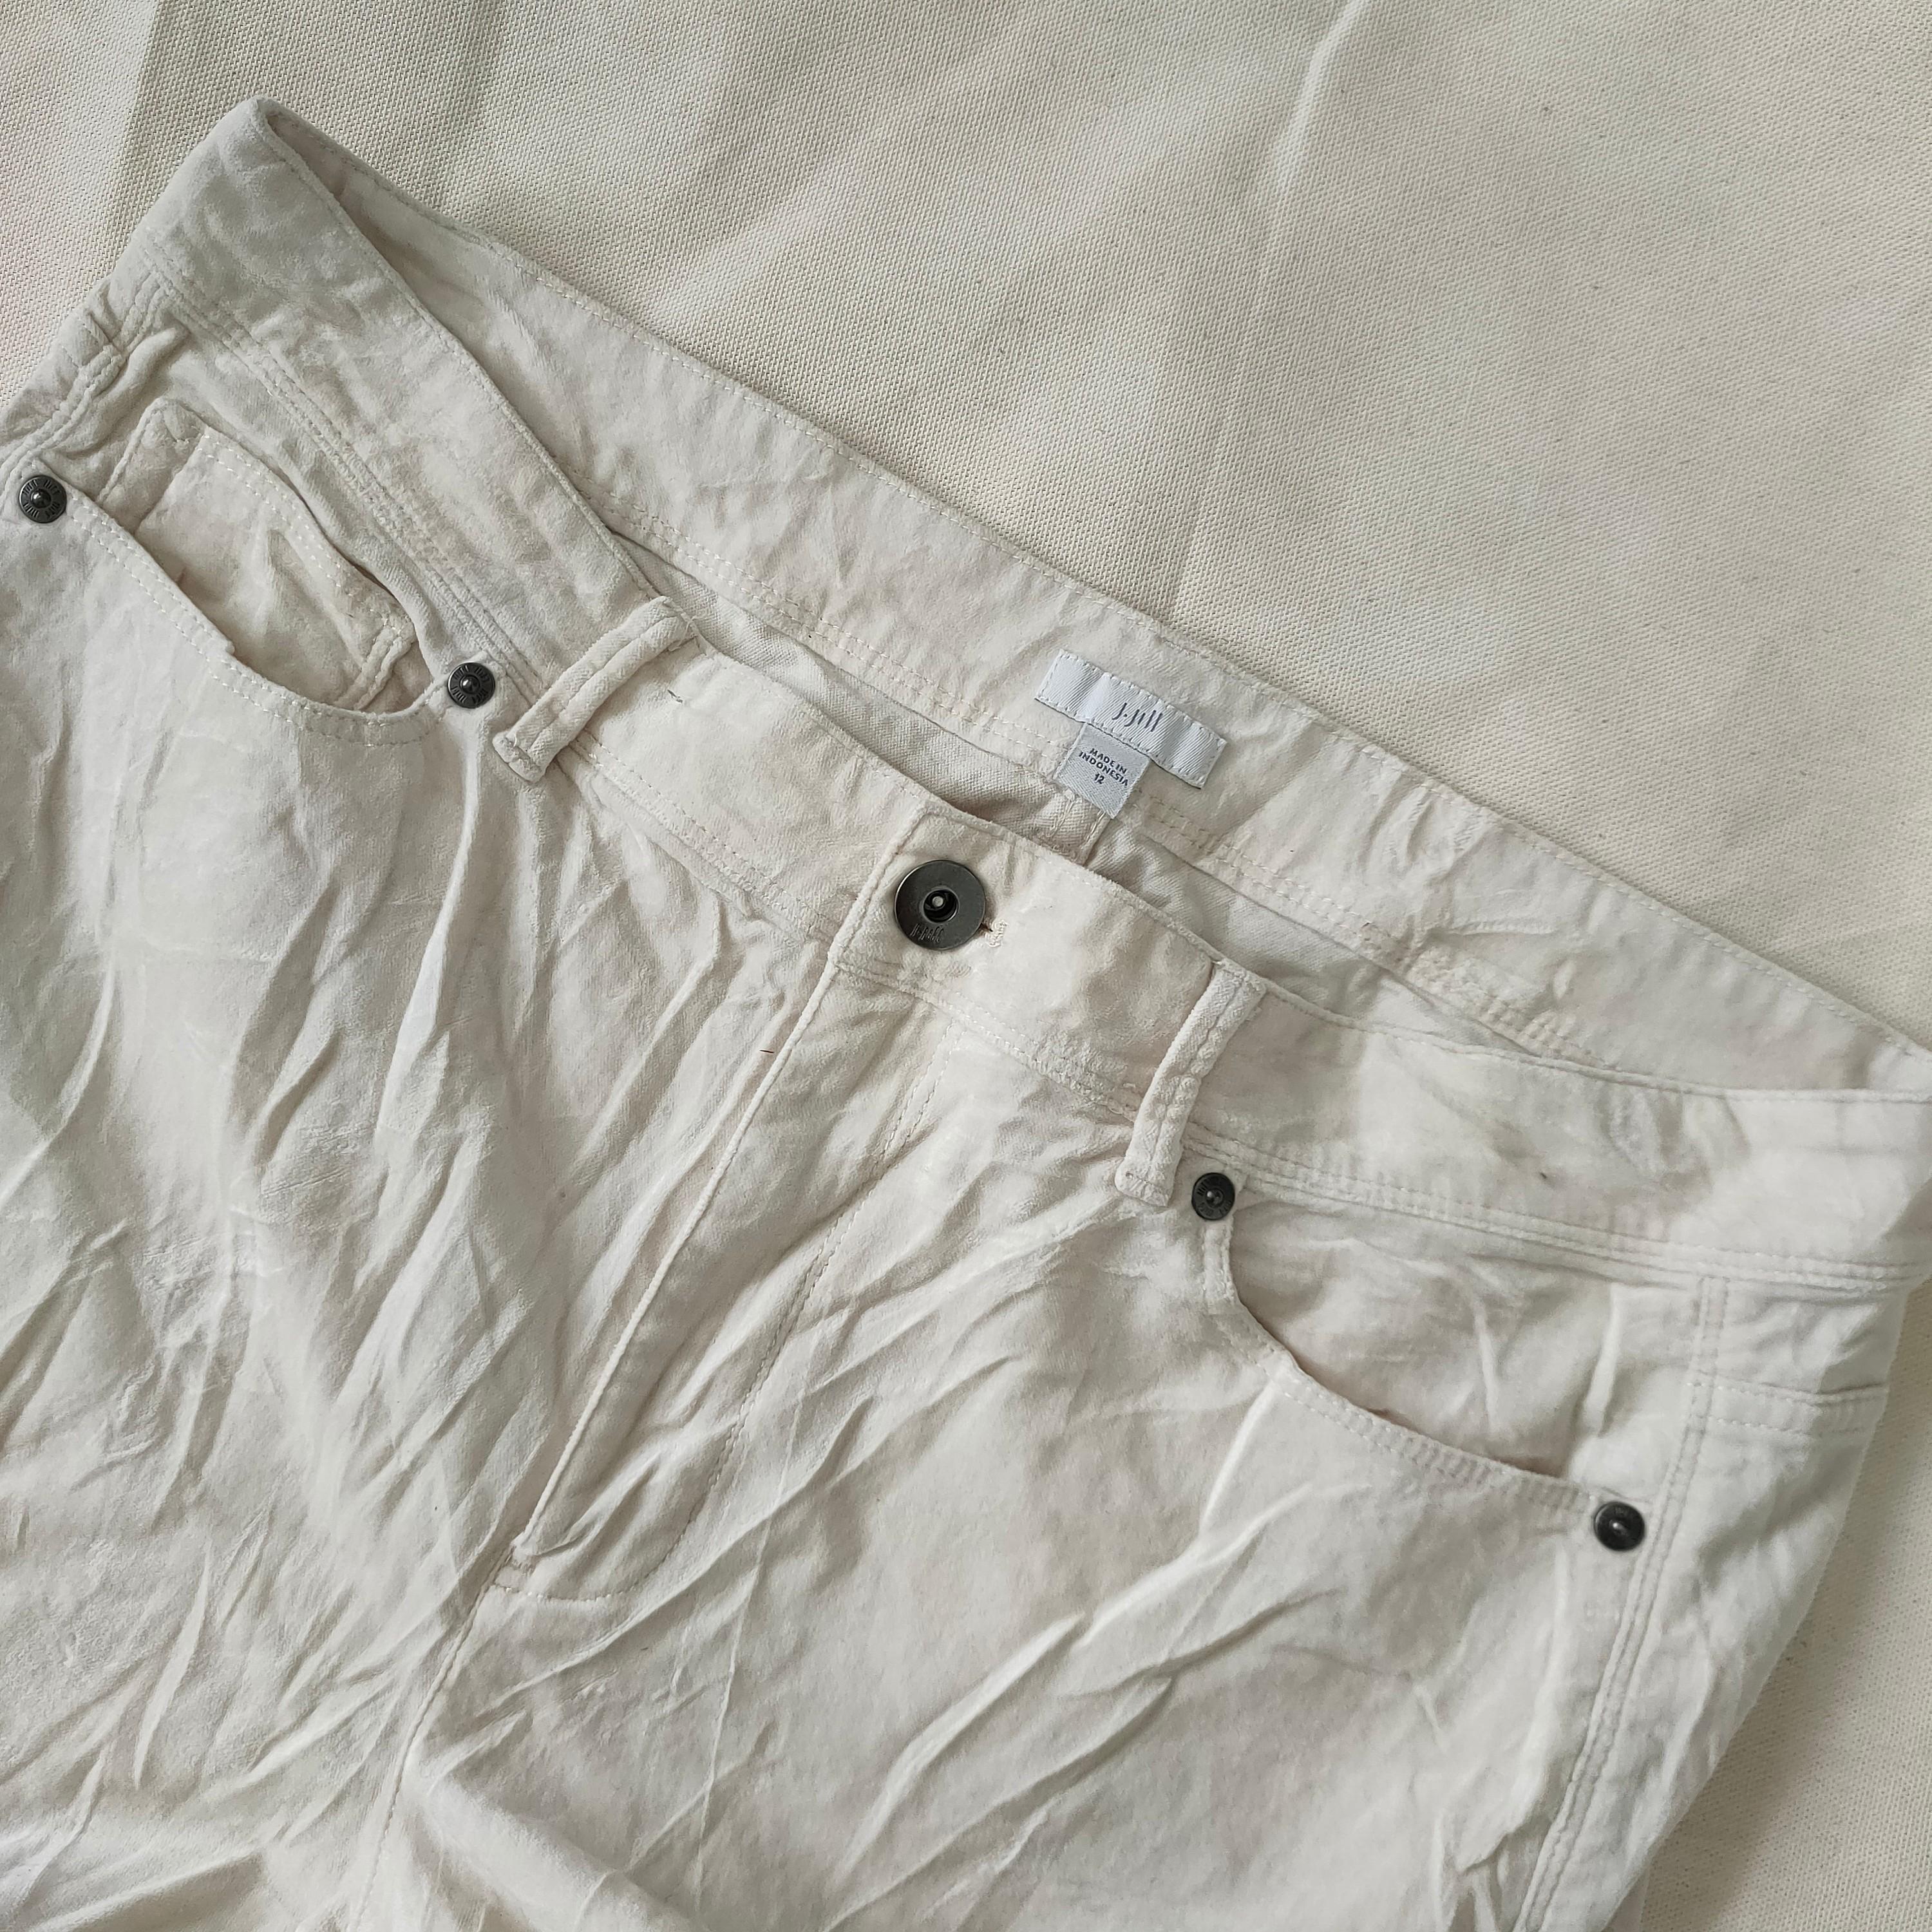 White j.jill large size corduroy pants, Women's Fashion, Bottoms